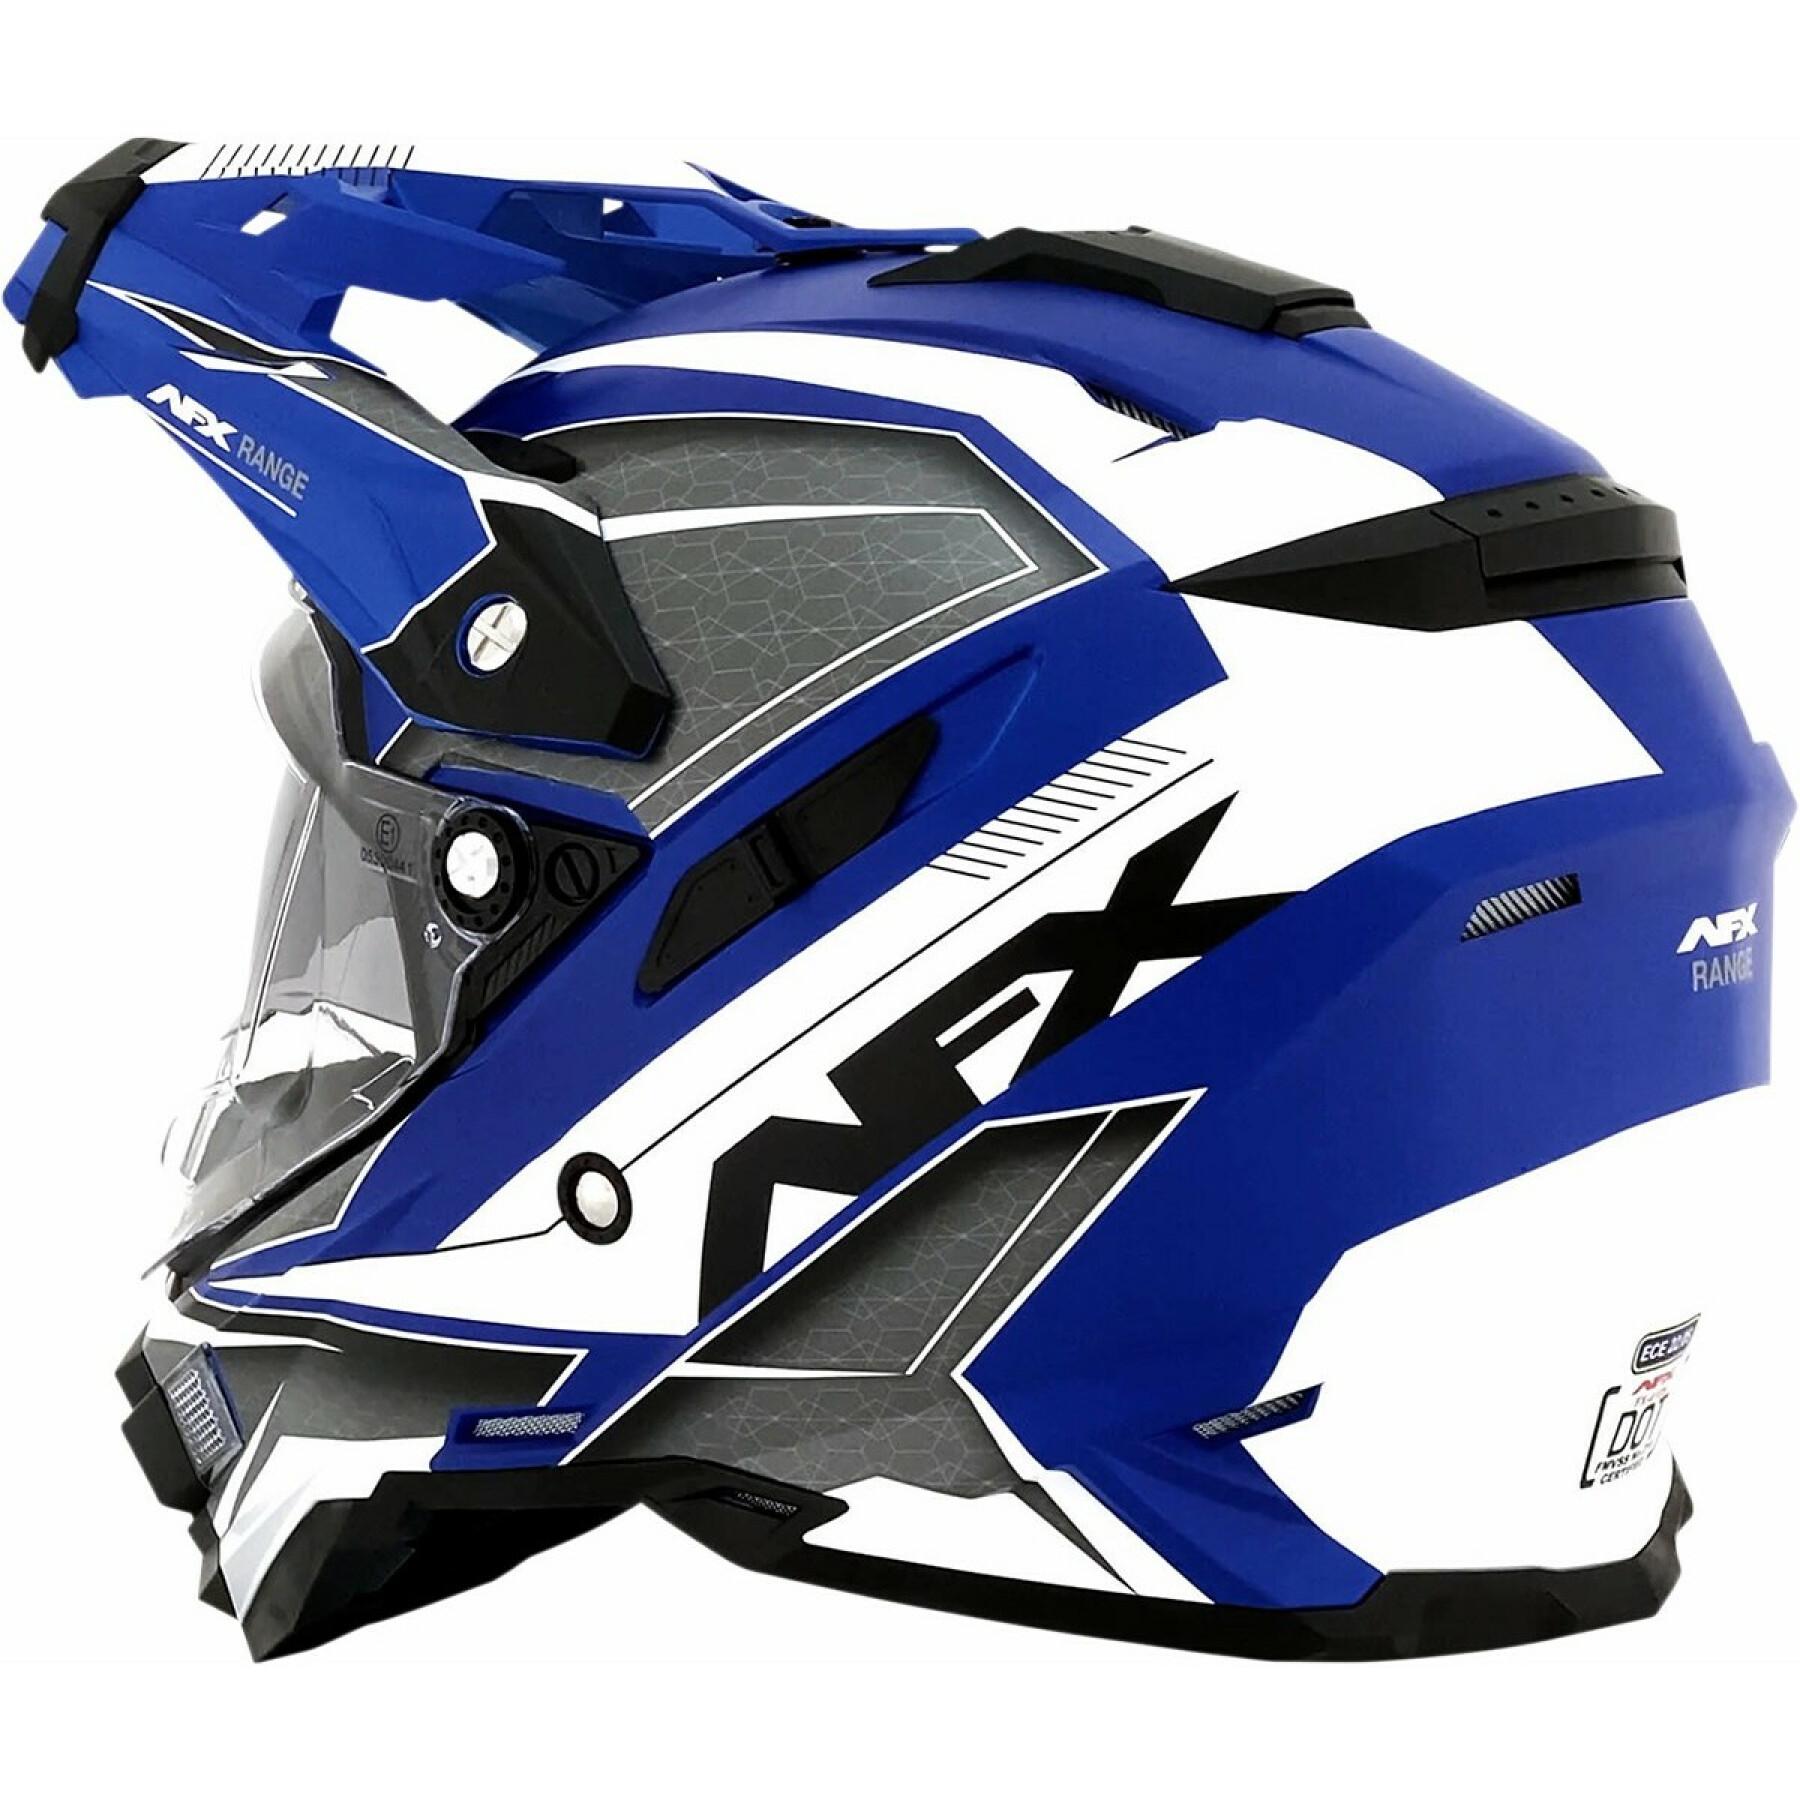 Motorcycle helmet AFX FX41